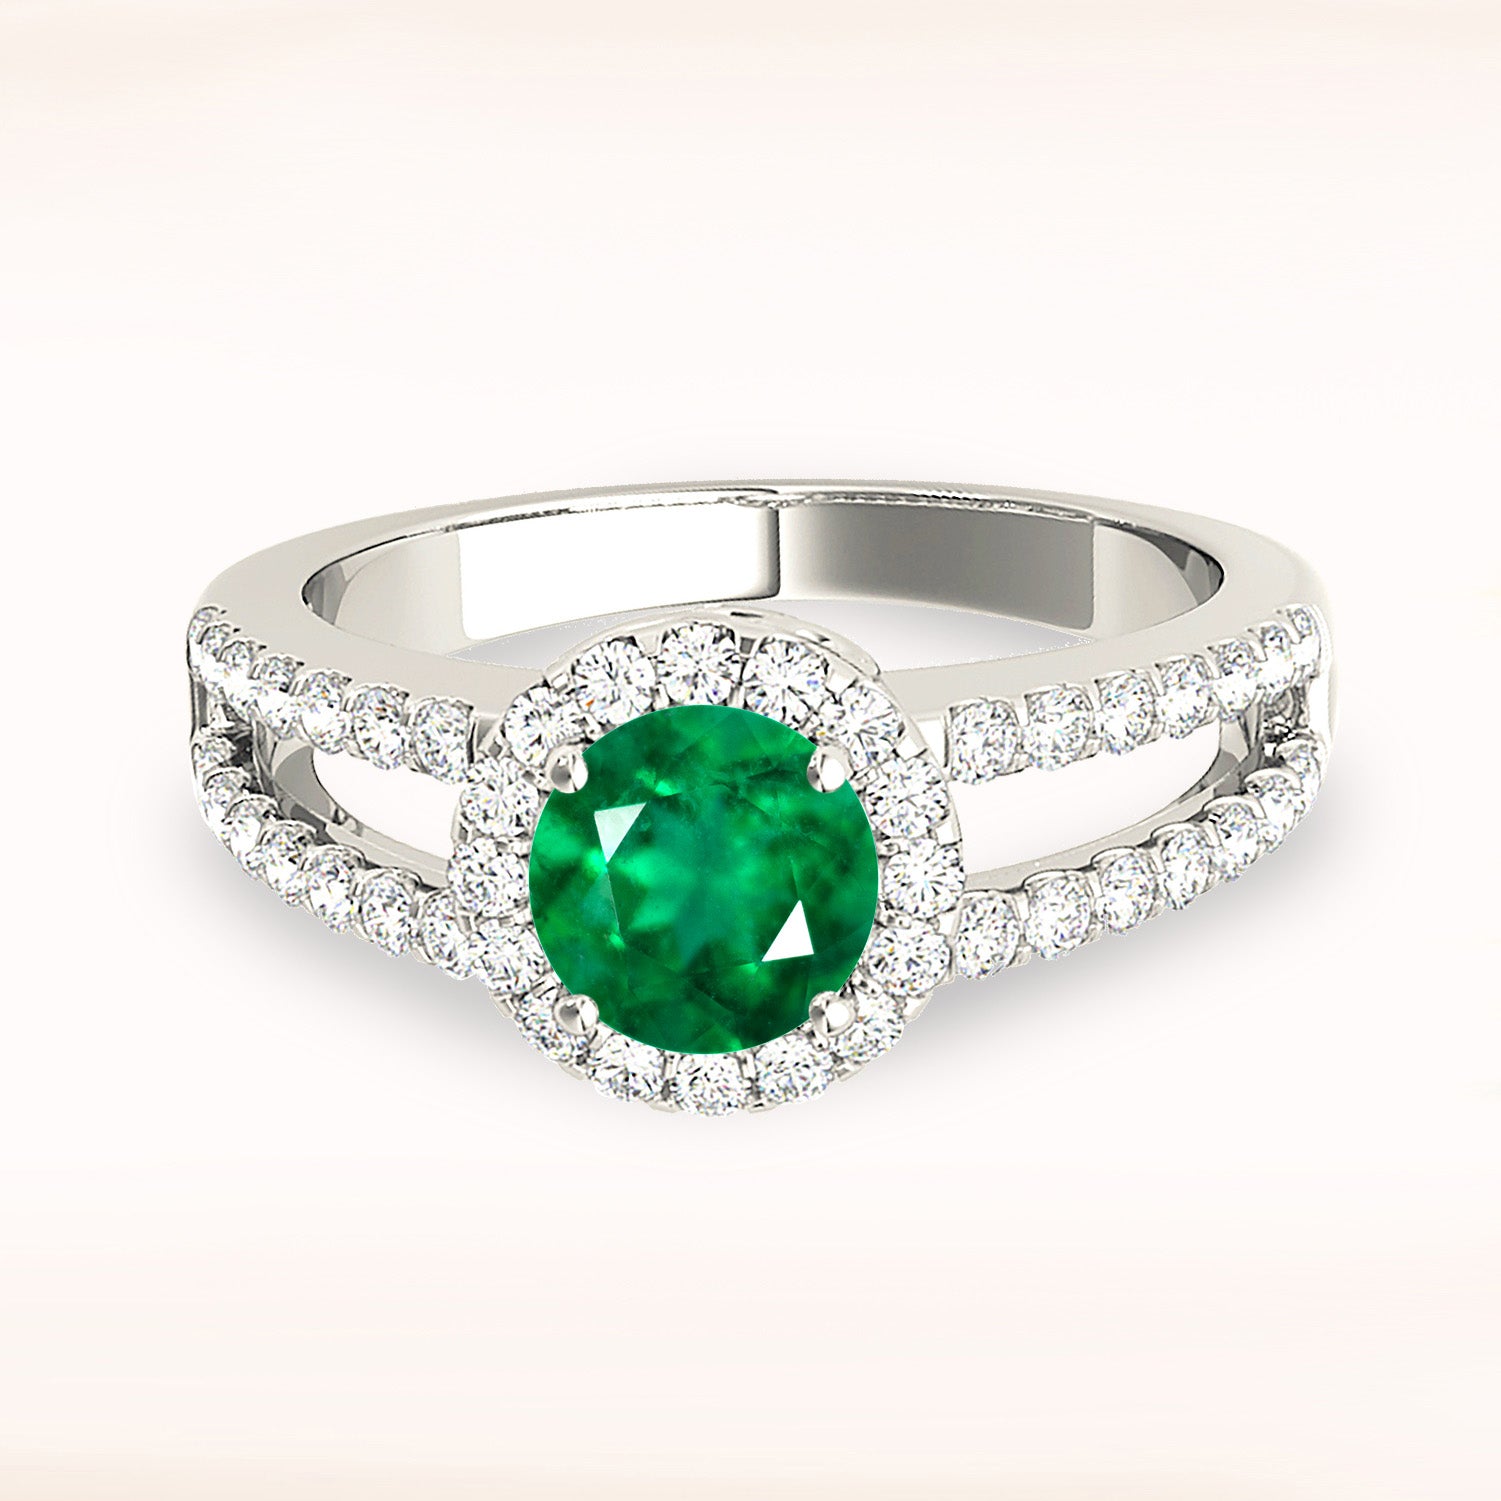 1.68 ct. Genuine Emerald Ring with 0.50 ctw. Diamond Halo, Wide Split Diamond Band,Swirl Bridge-in 14K/18K White, Yellow, Rose Gold and Platinum - Christmas Jewelry Gift -VIRABYANI